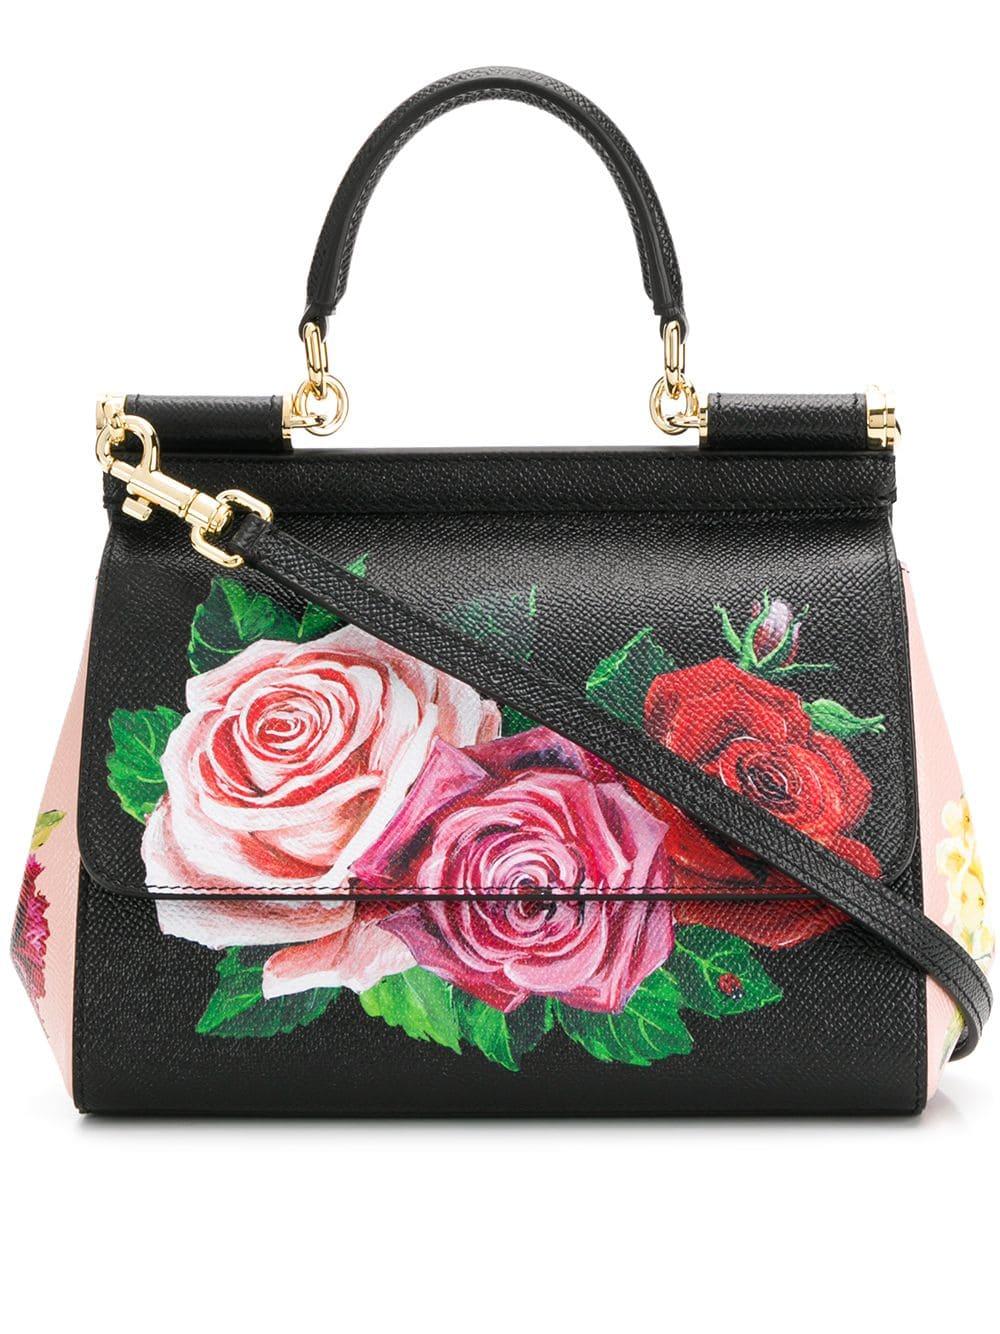 Dolce & Gabbana Sicily Mini Bag in Black - Save 64% - Lyst